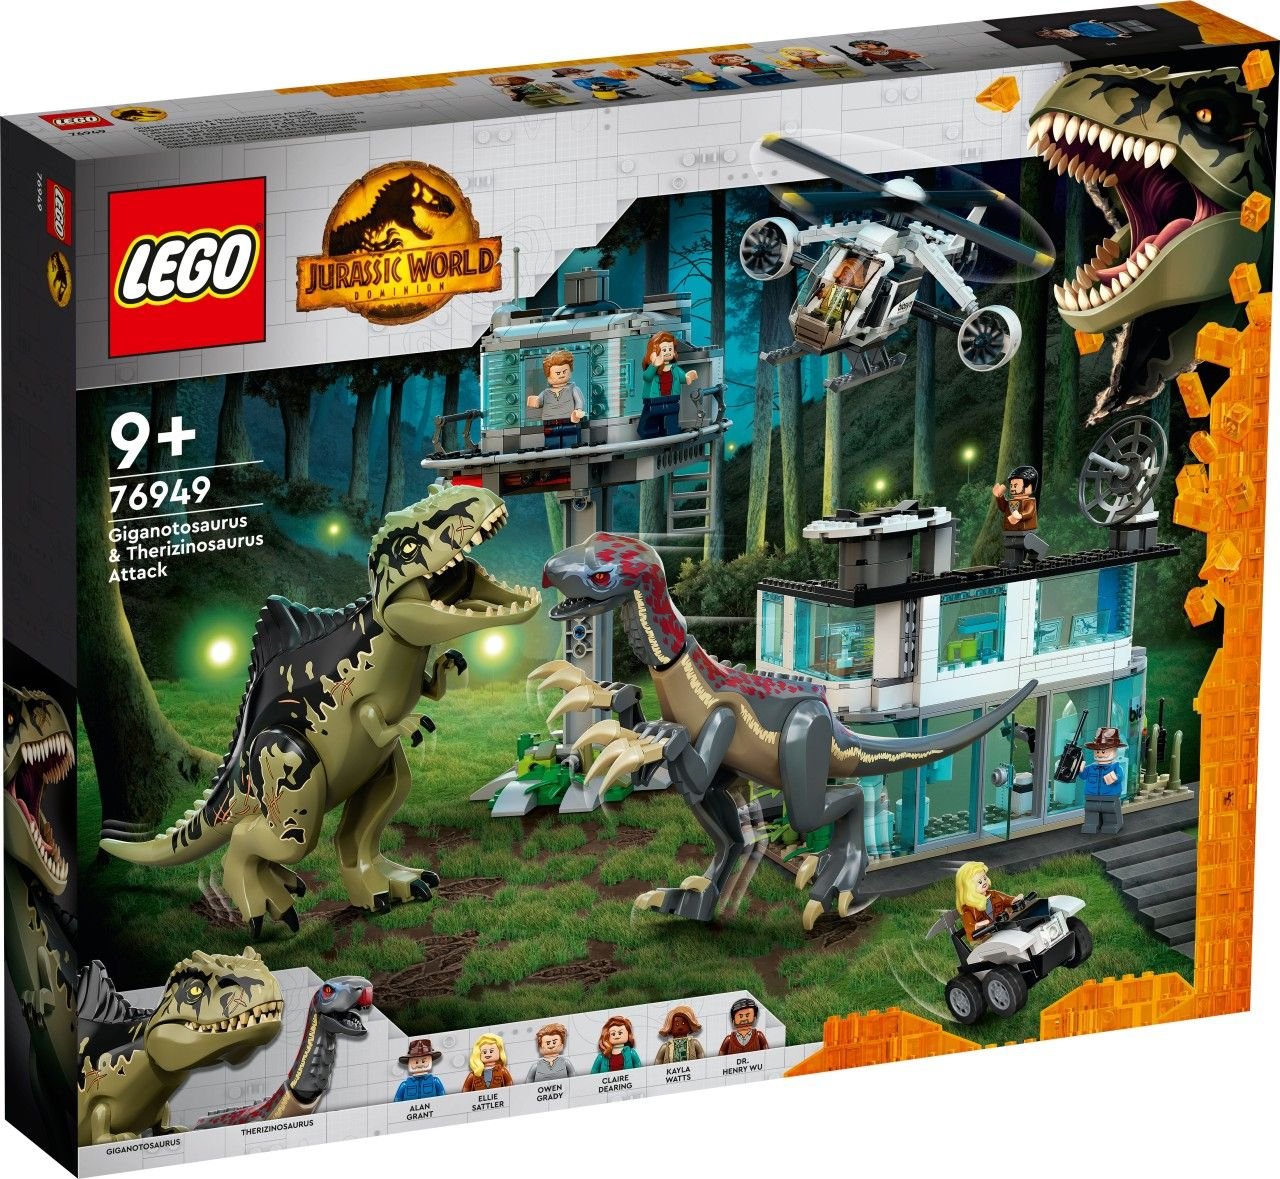 LEGO Jurassic World 76949 Giganotosaurus & Therizinosaurus Angriff LEGO_76949_prodimg.jpg